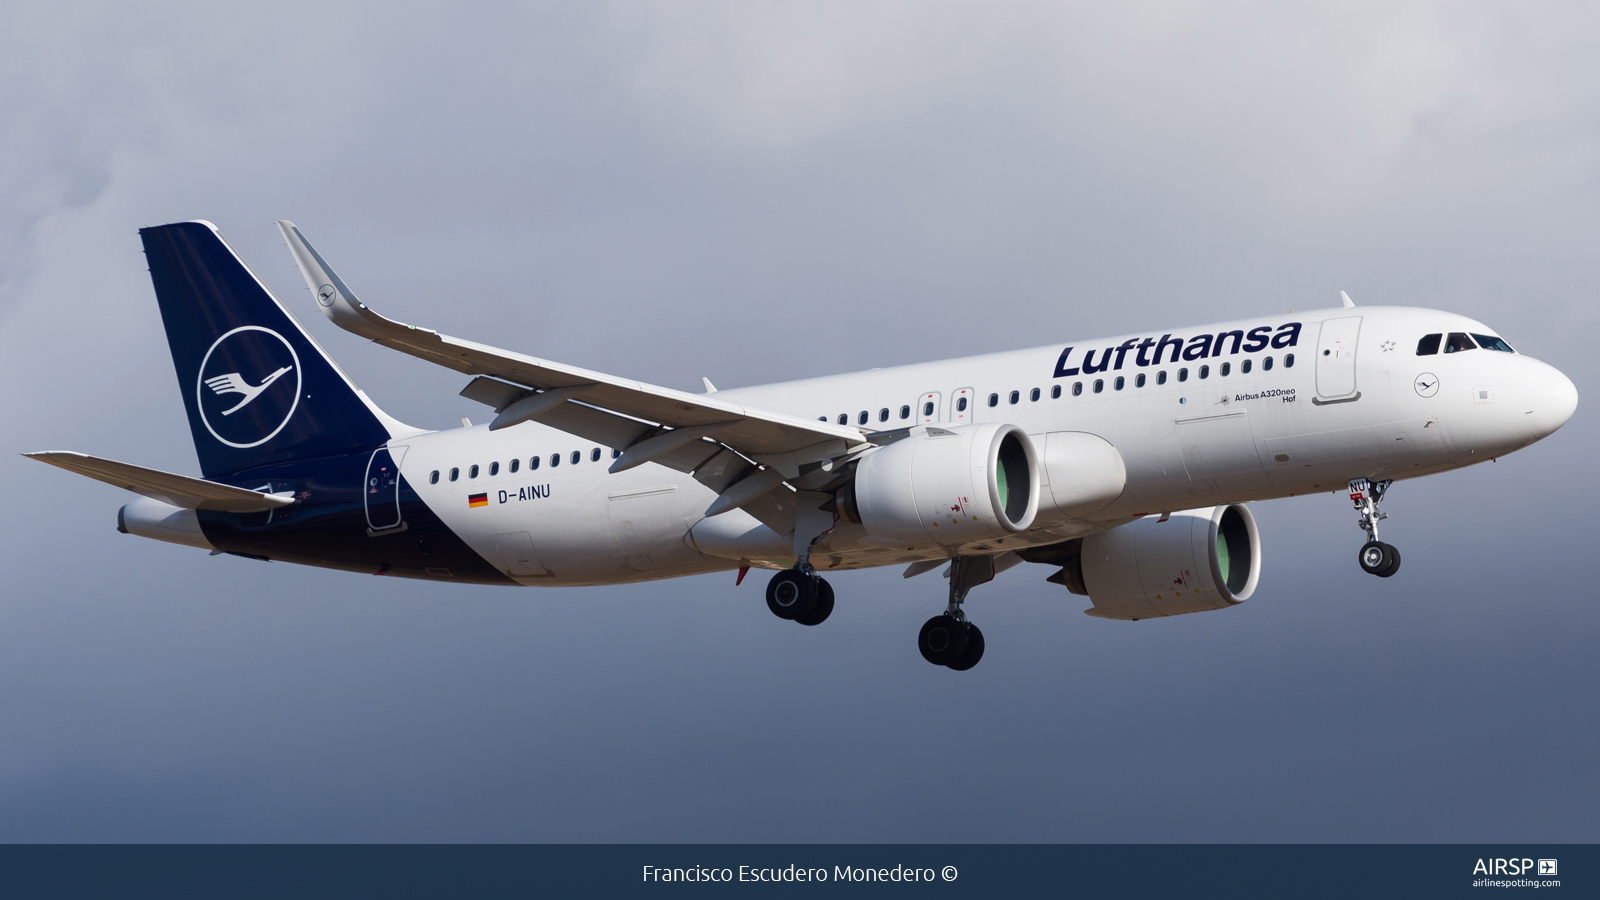 Lufthansa  Airbus A320neo  D-AINU